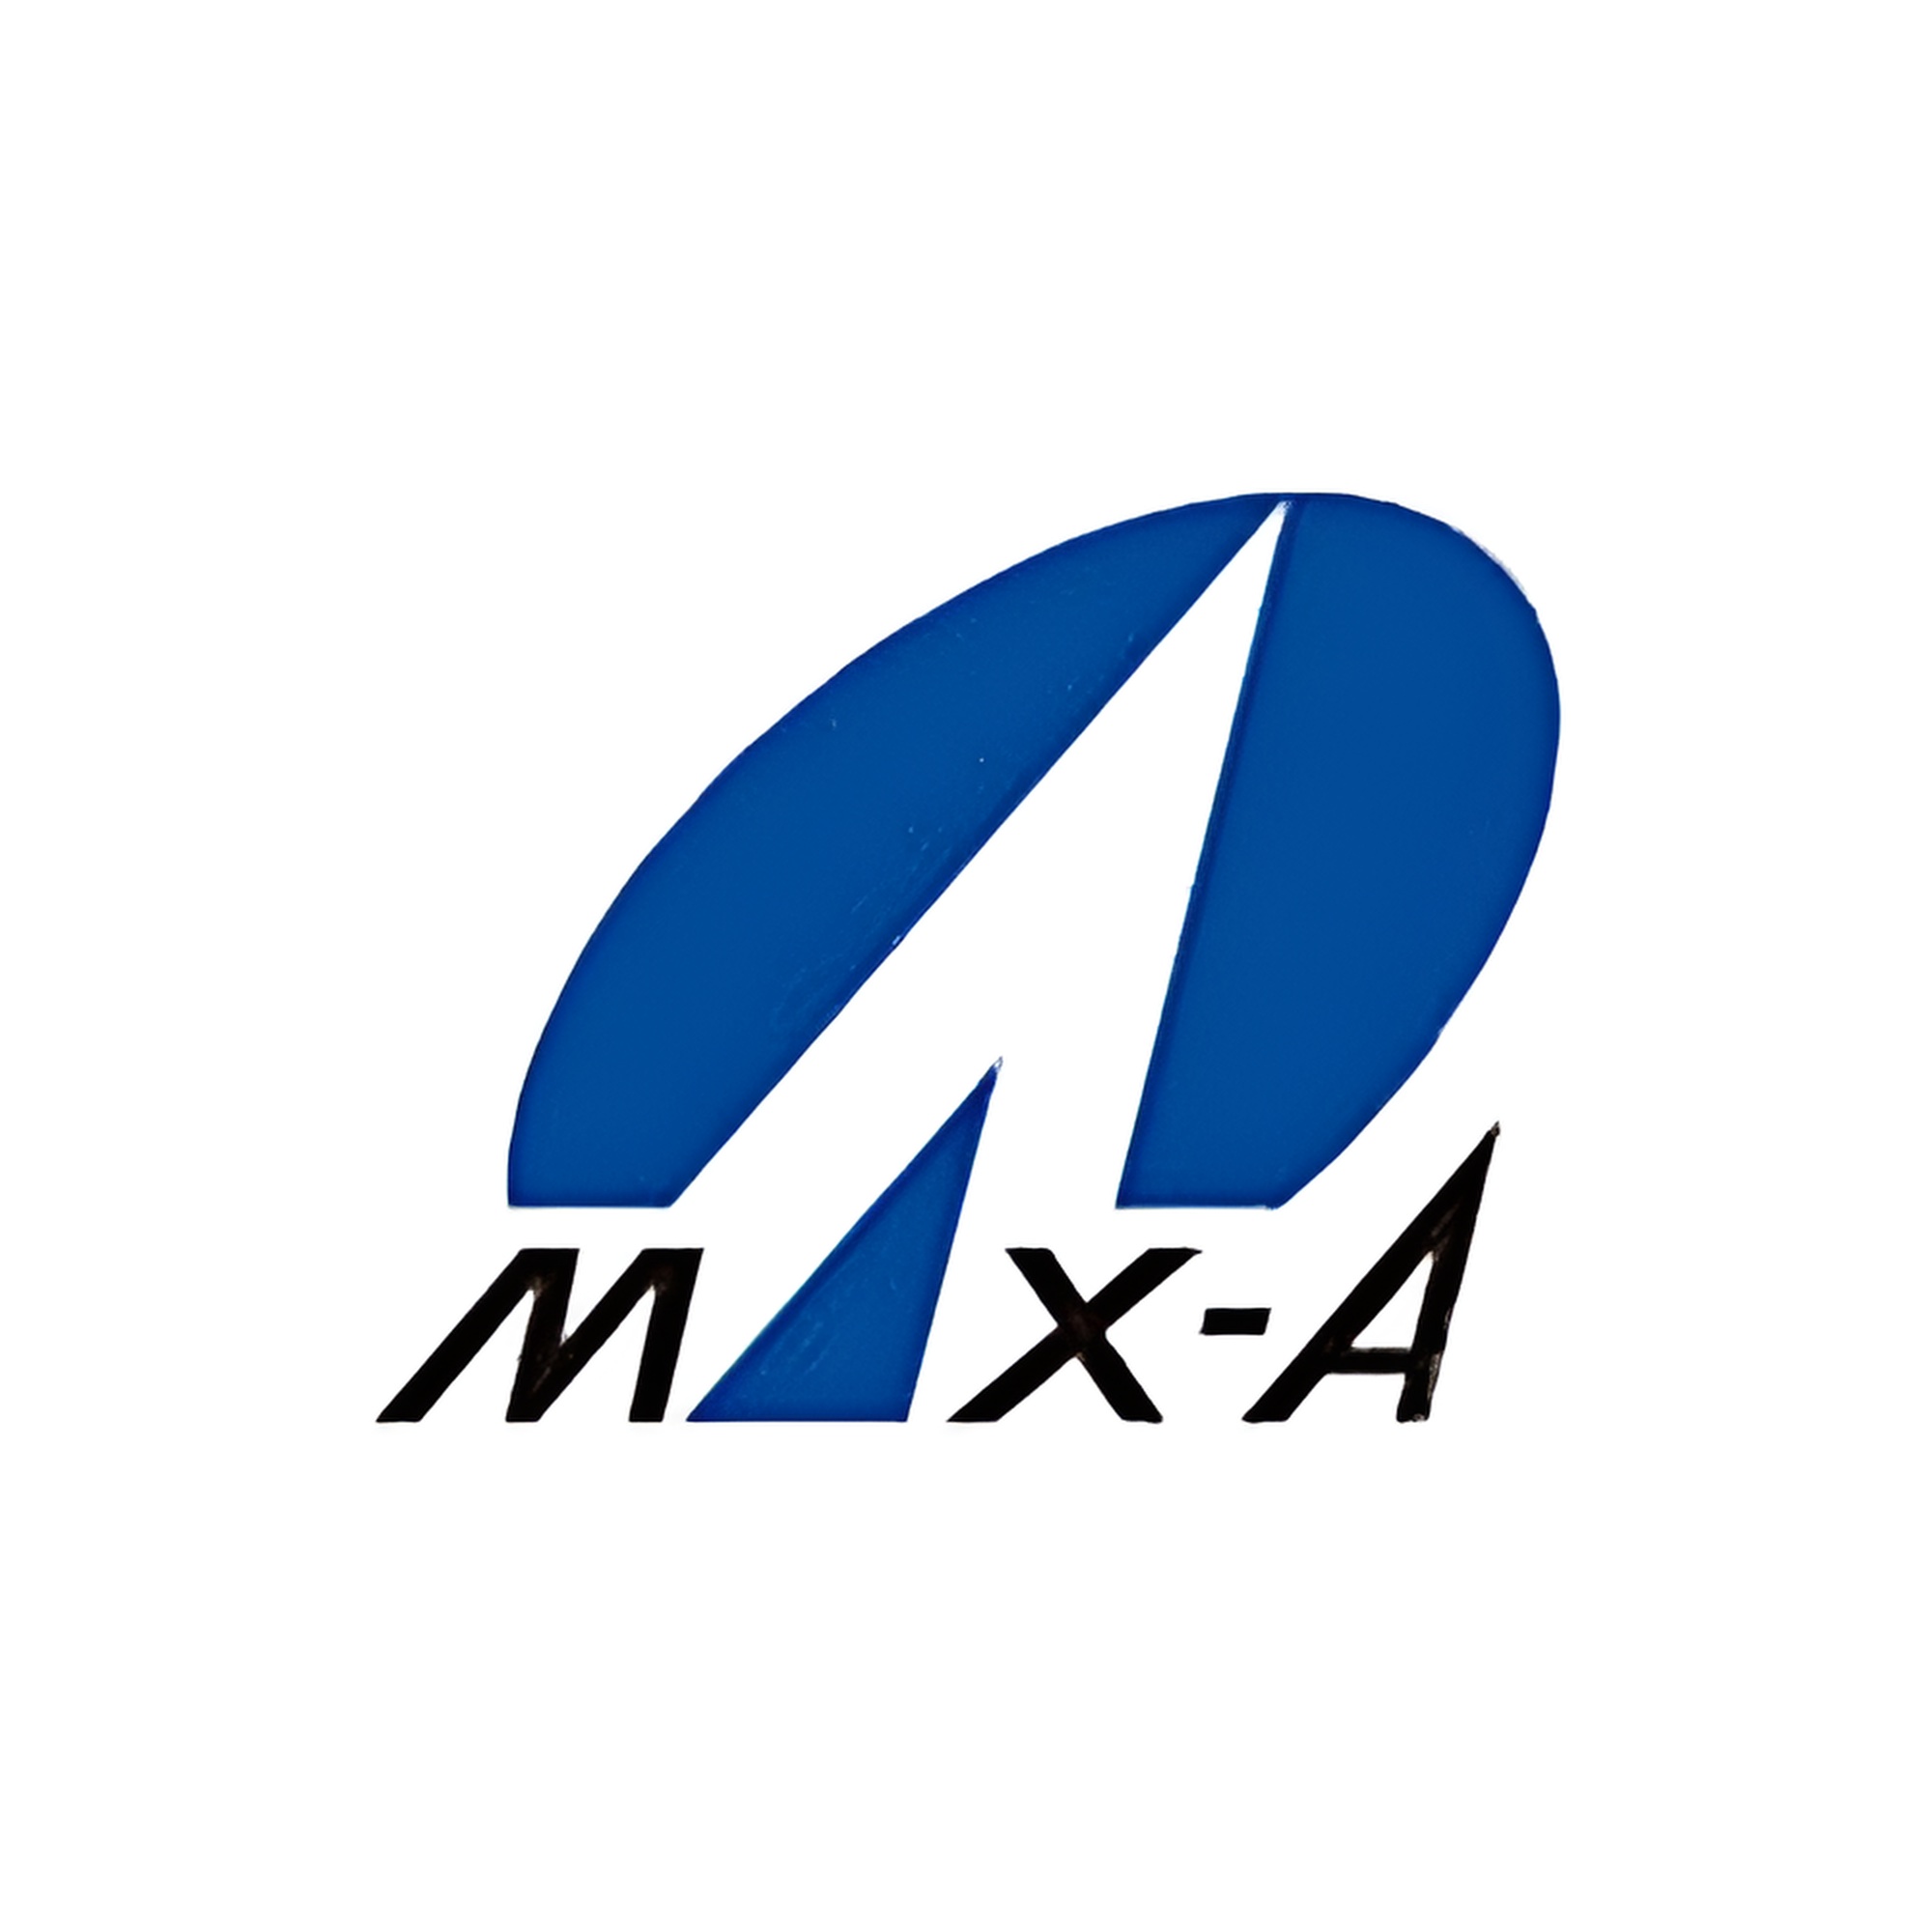 Max A